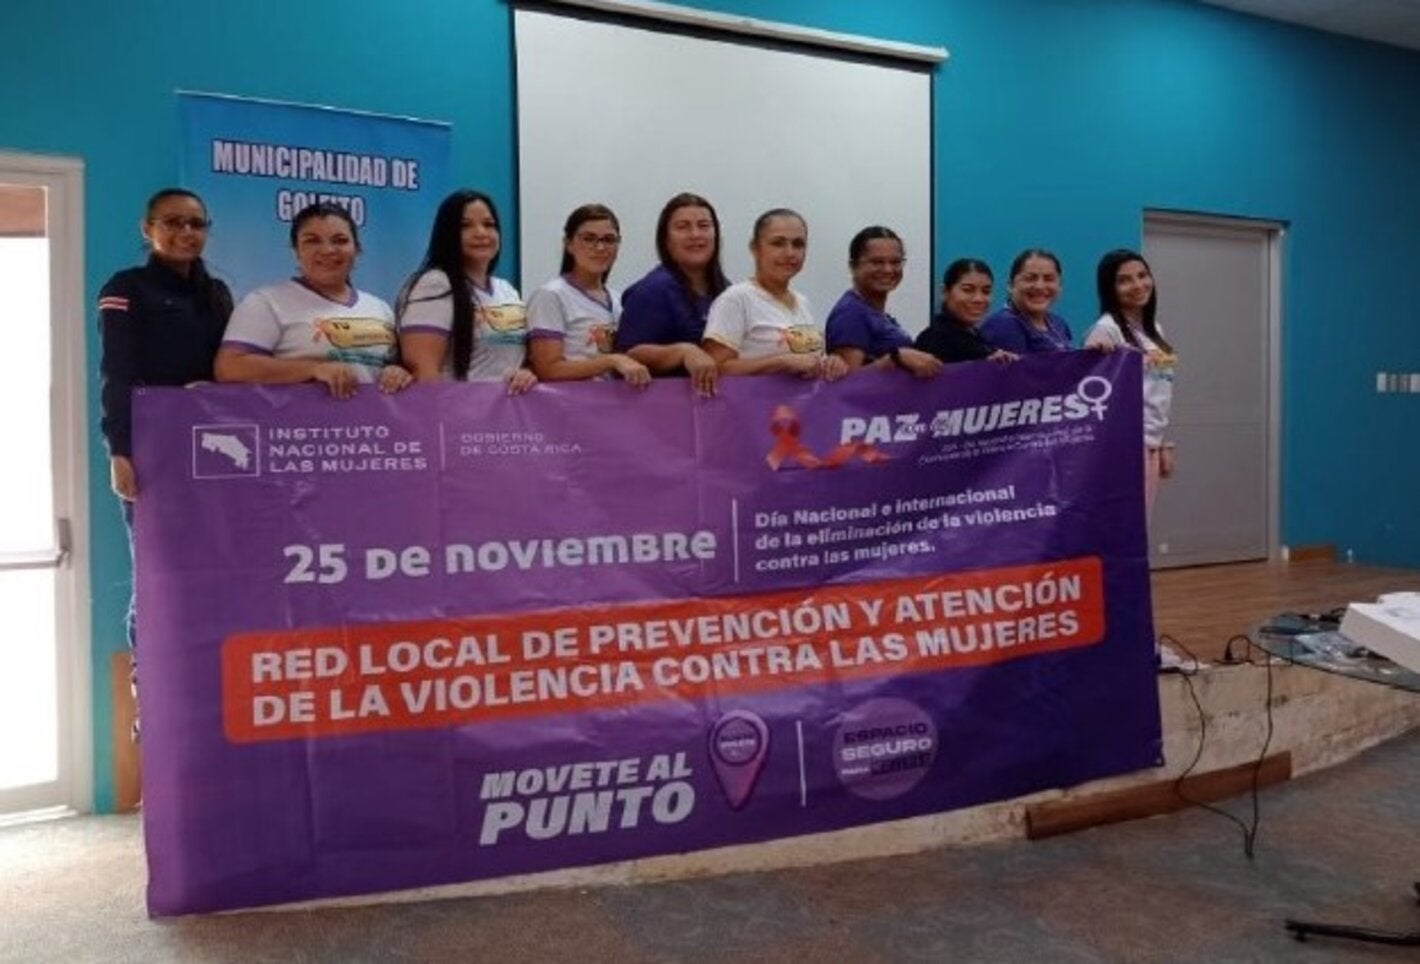 Grupo de mujeres participantes sosteniendo una pancarta